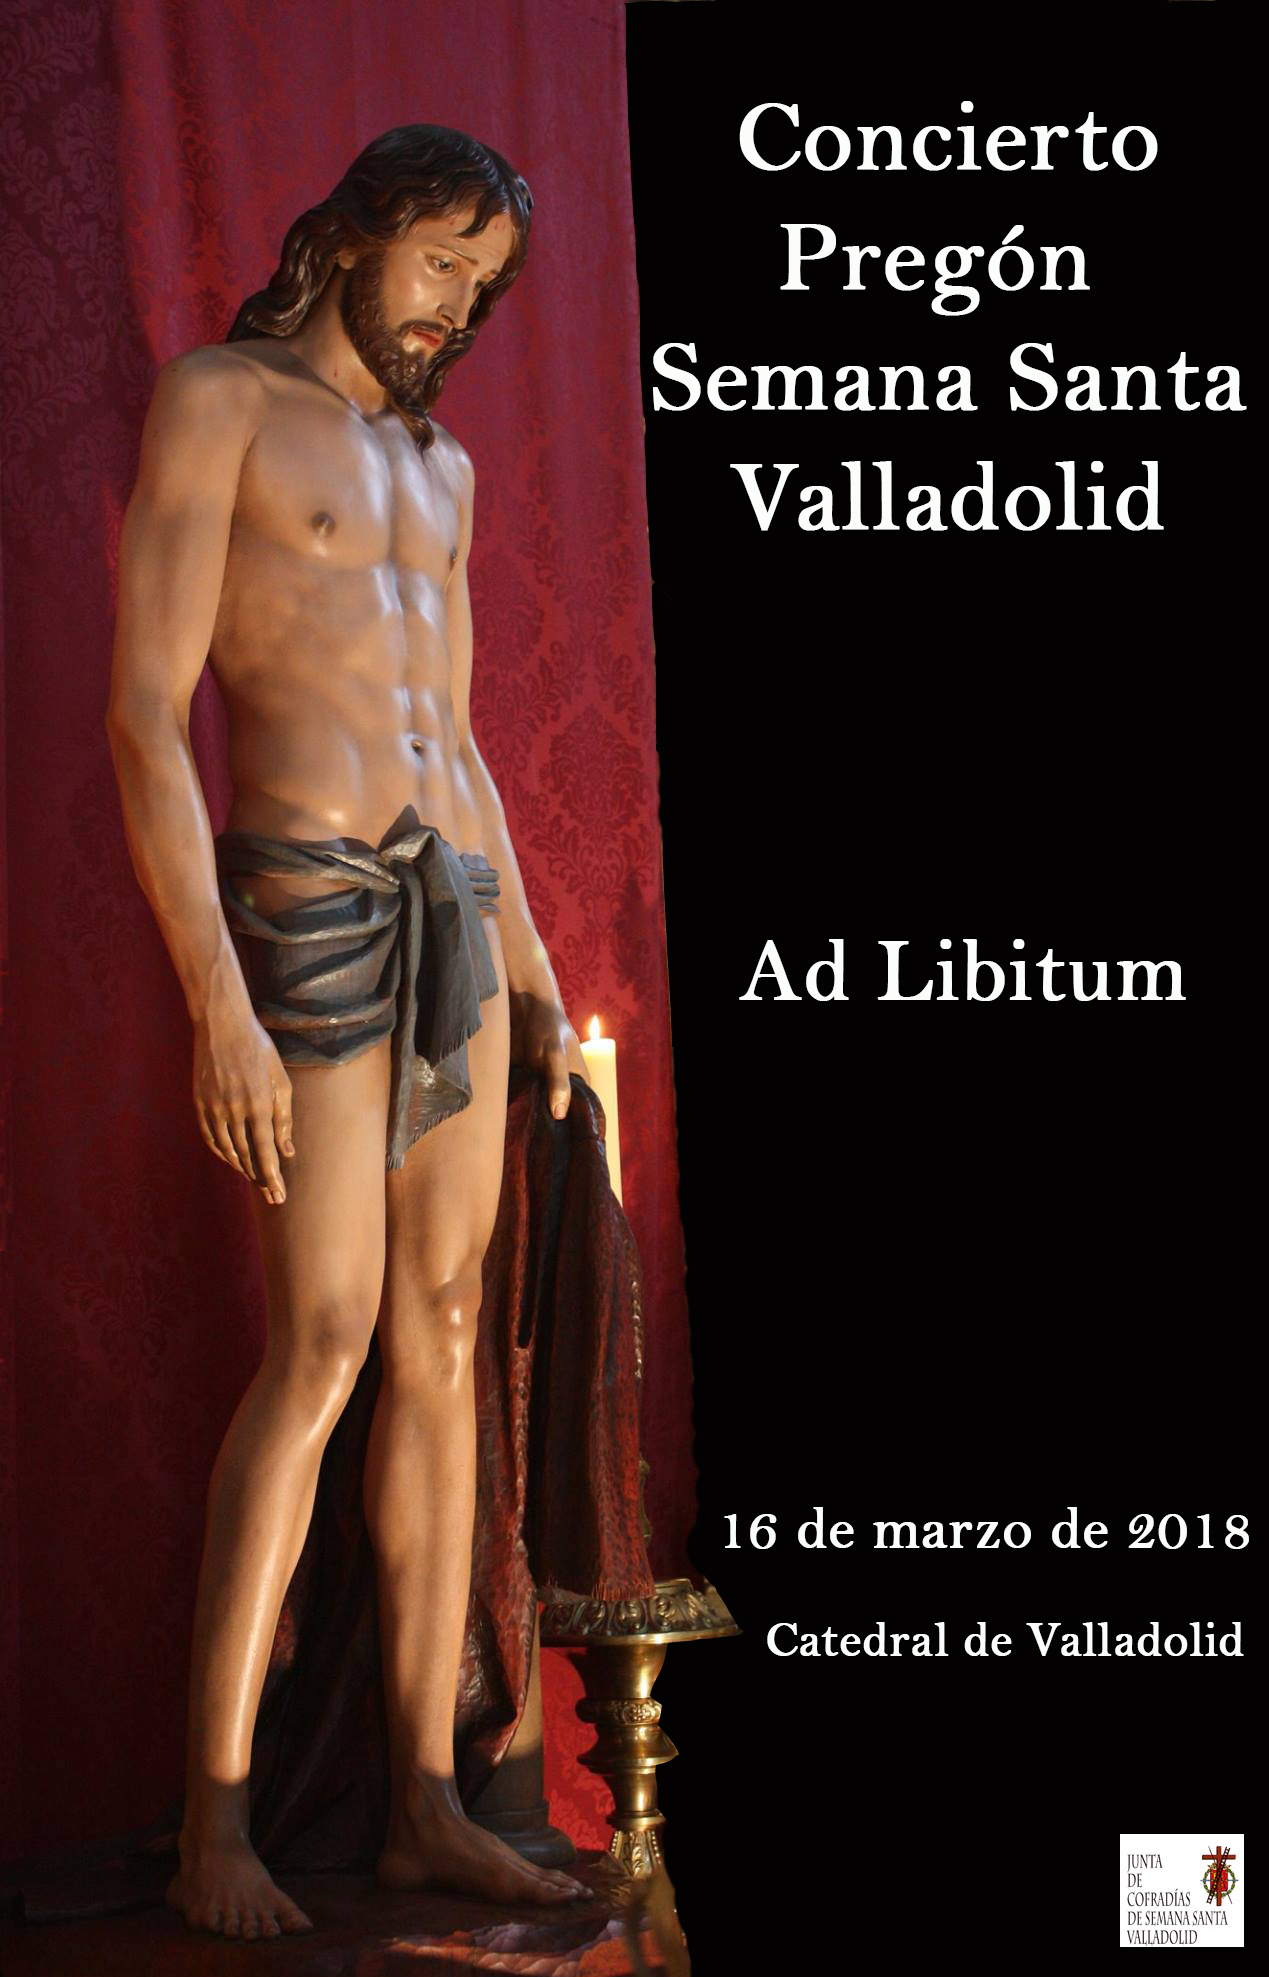 Concierto Pregón Valladolid 2018